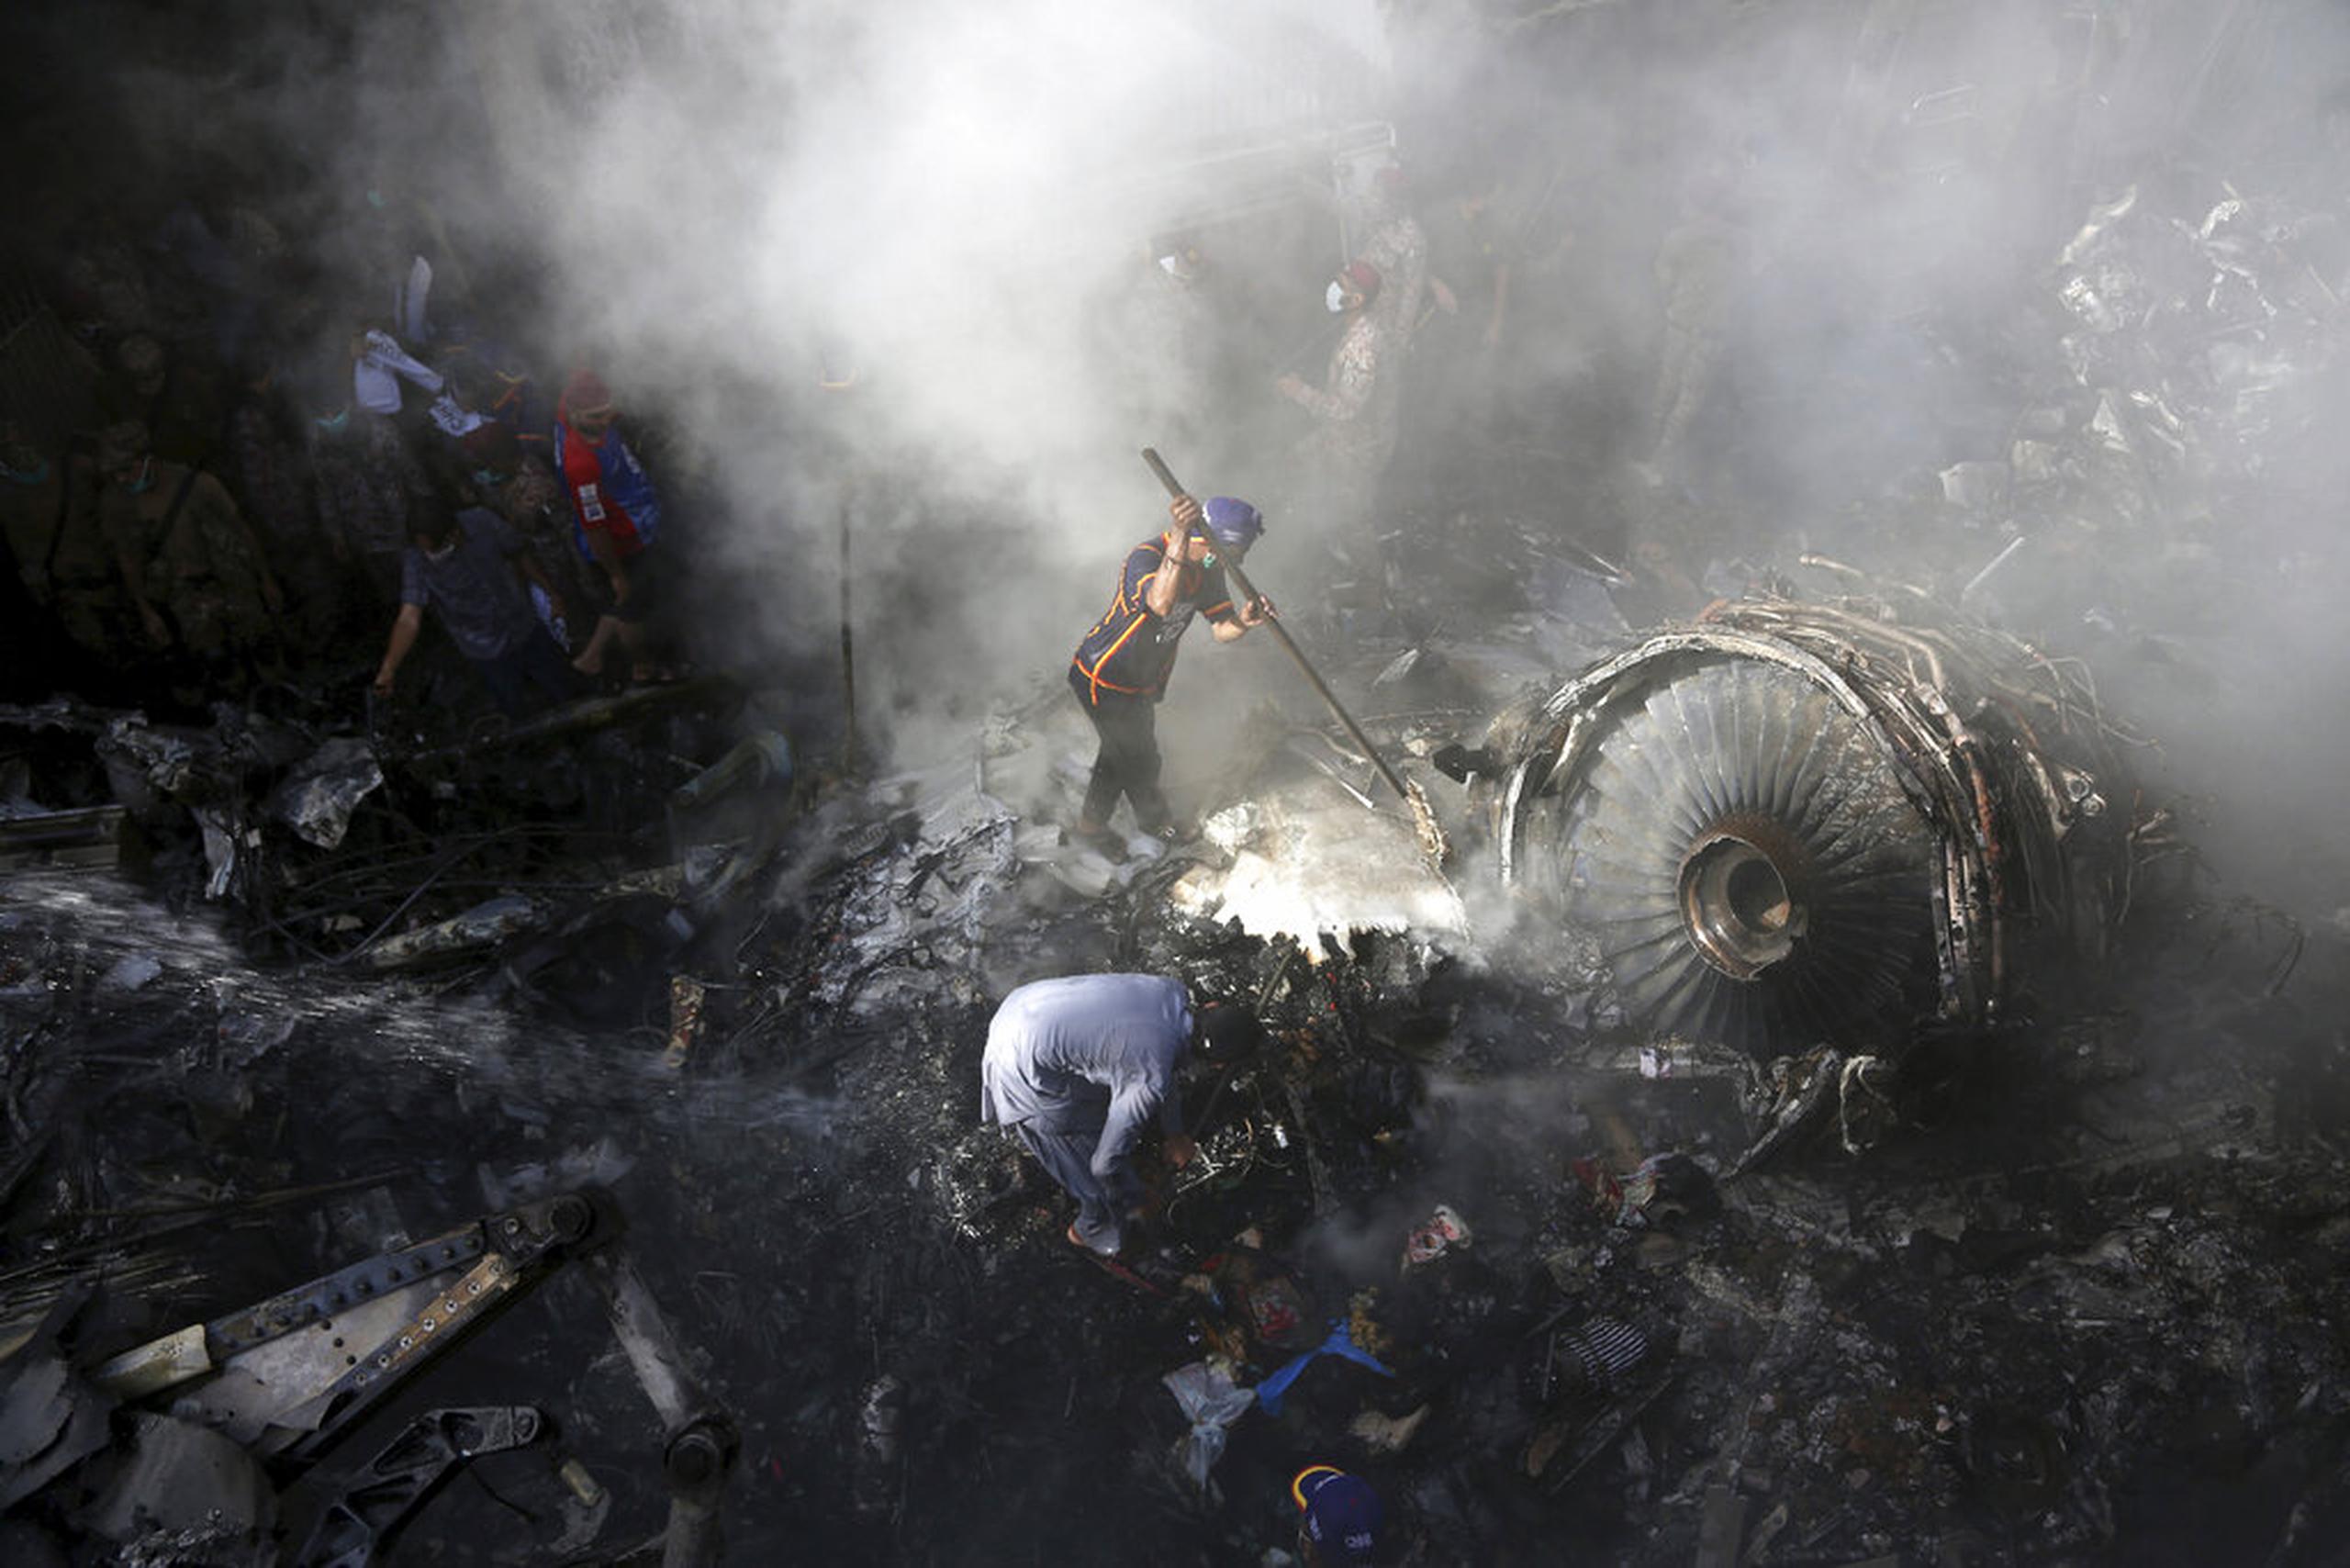 El pasado 22 de mayo, 97 personas murieron tras estrellarse un avión de Pakistan International Airlines en la ciudad de Karachi.